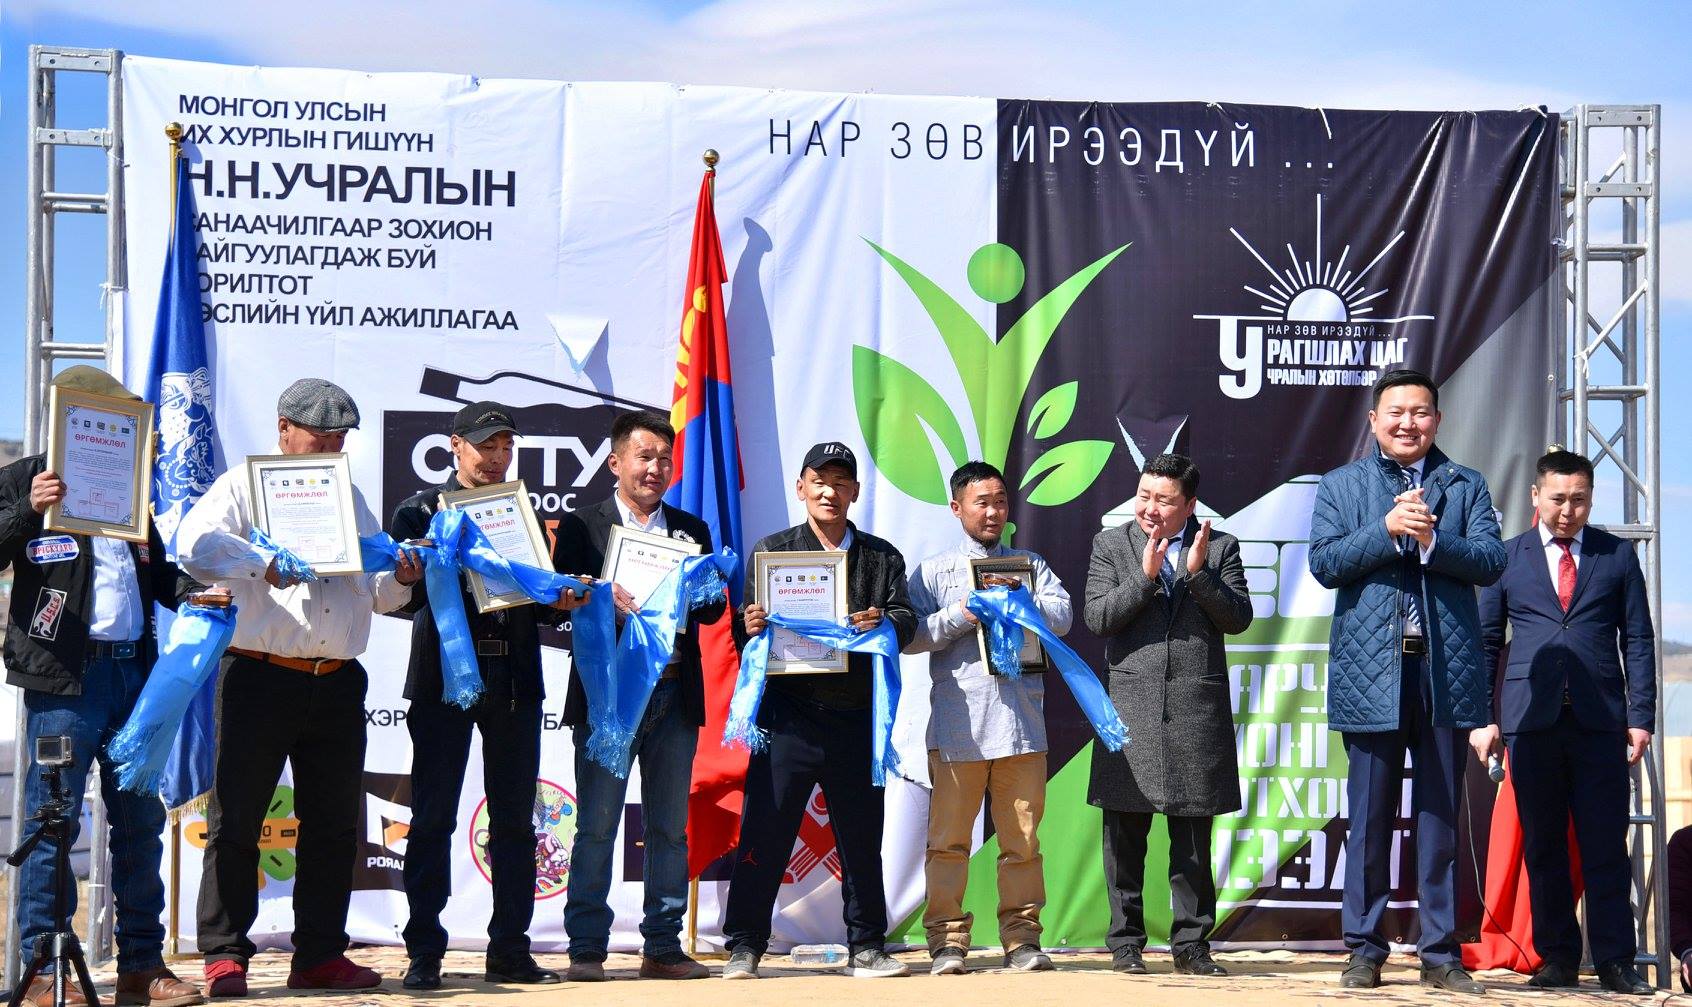 Сонгинохайрхан дүүрэгт "Саруул Монгол" хотхон нээлтээ хийлээ